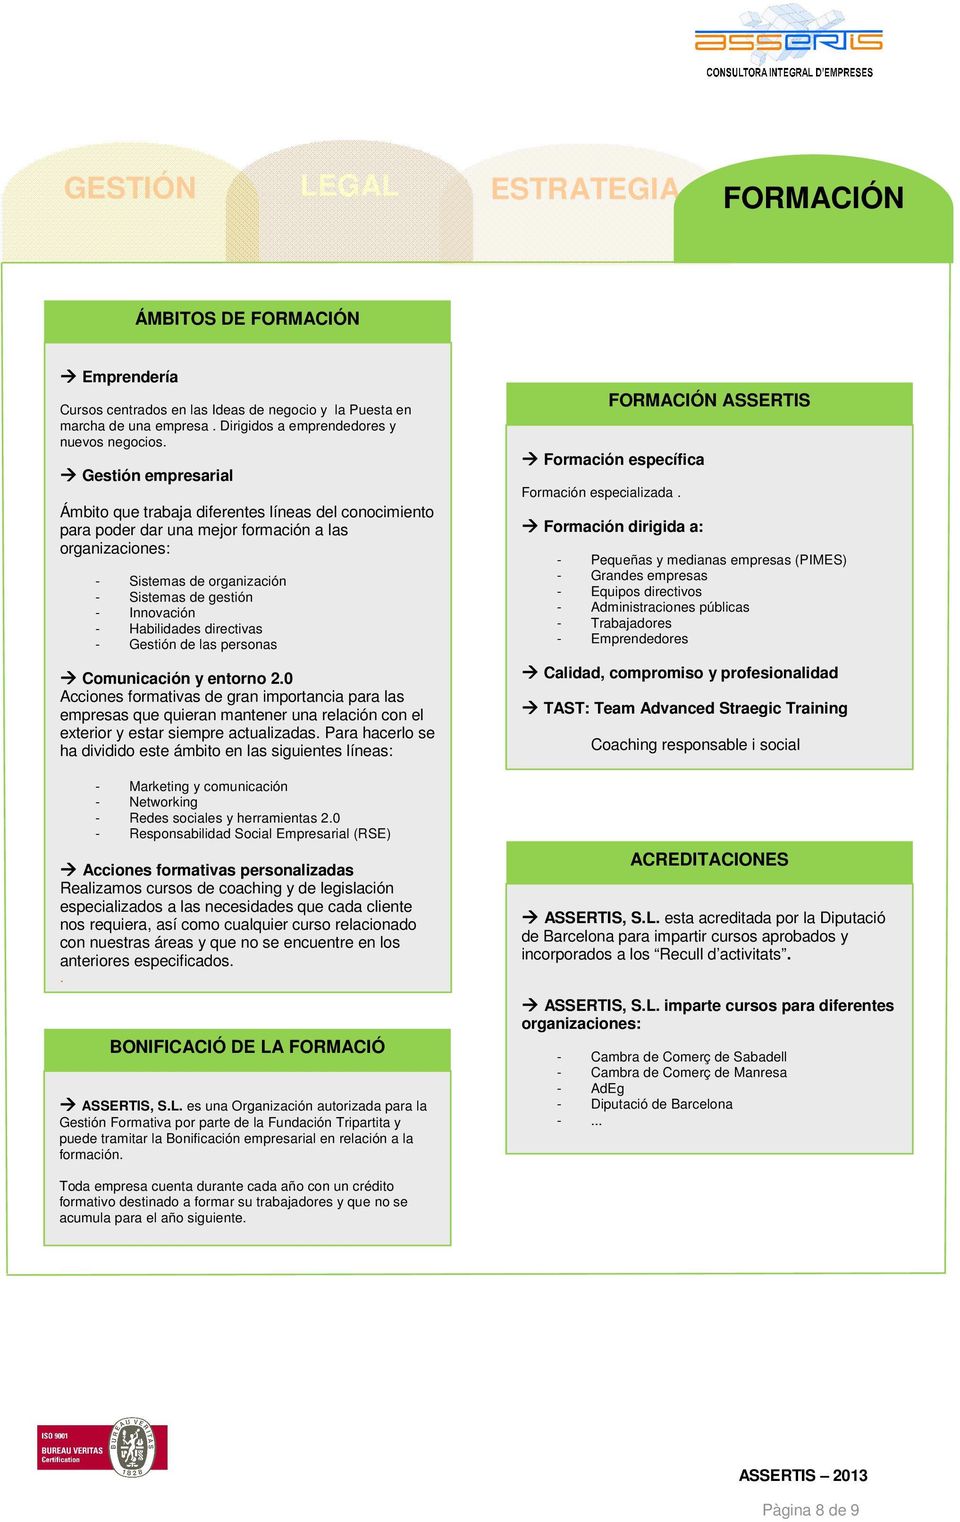 Habilidades directivas - Gestión de las personas Comunicación y entorno 2.